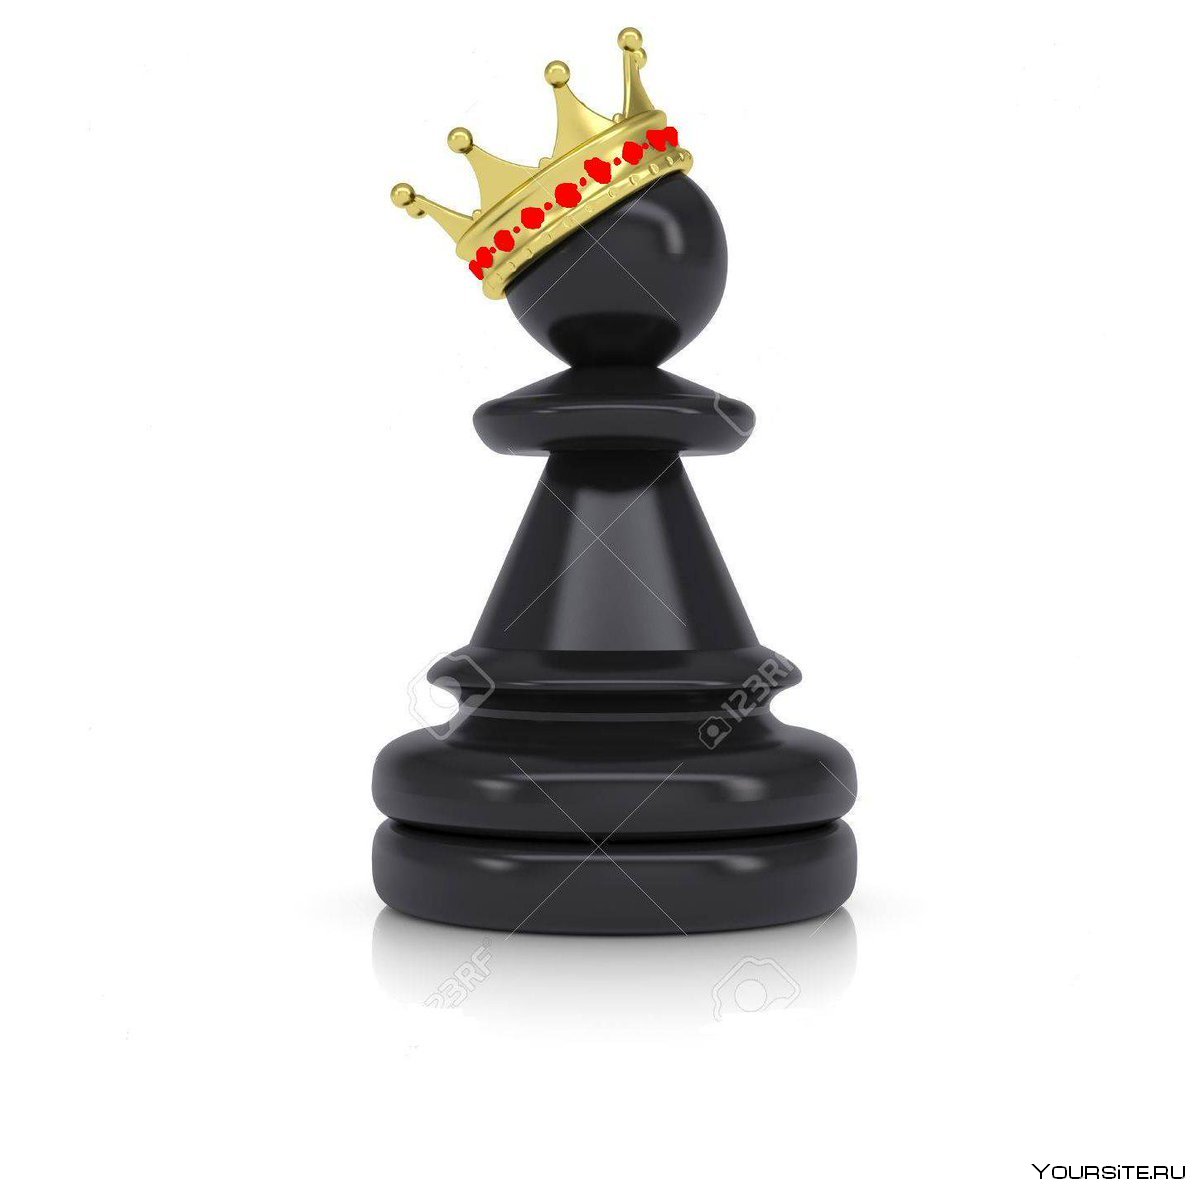 Королева он же ферзь в шахматах ?